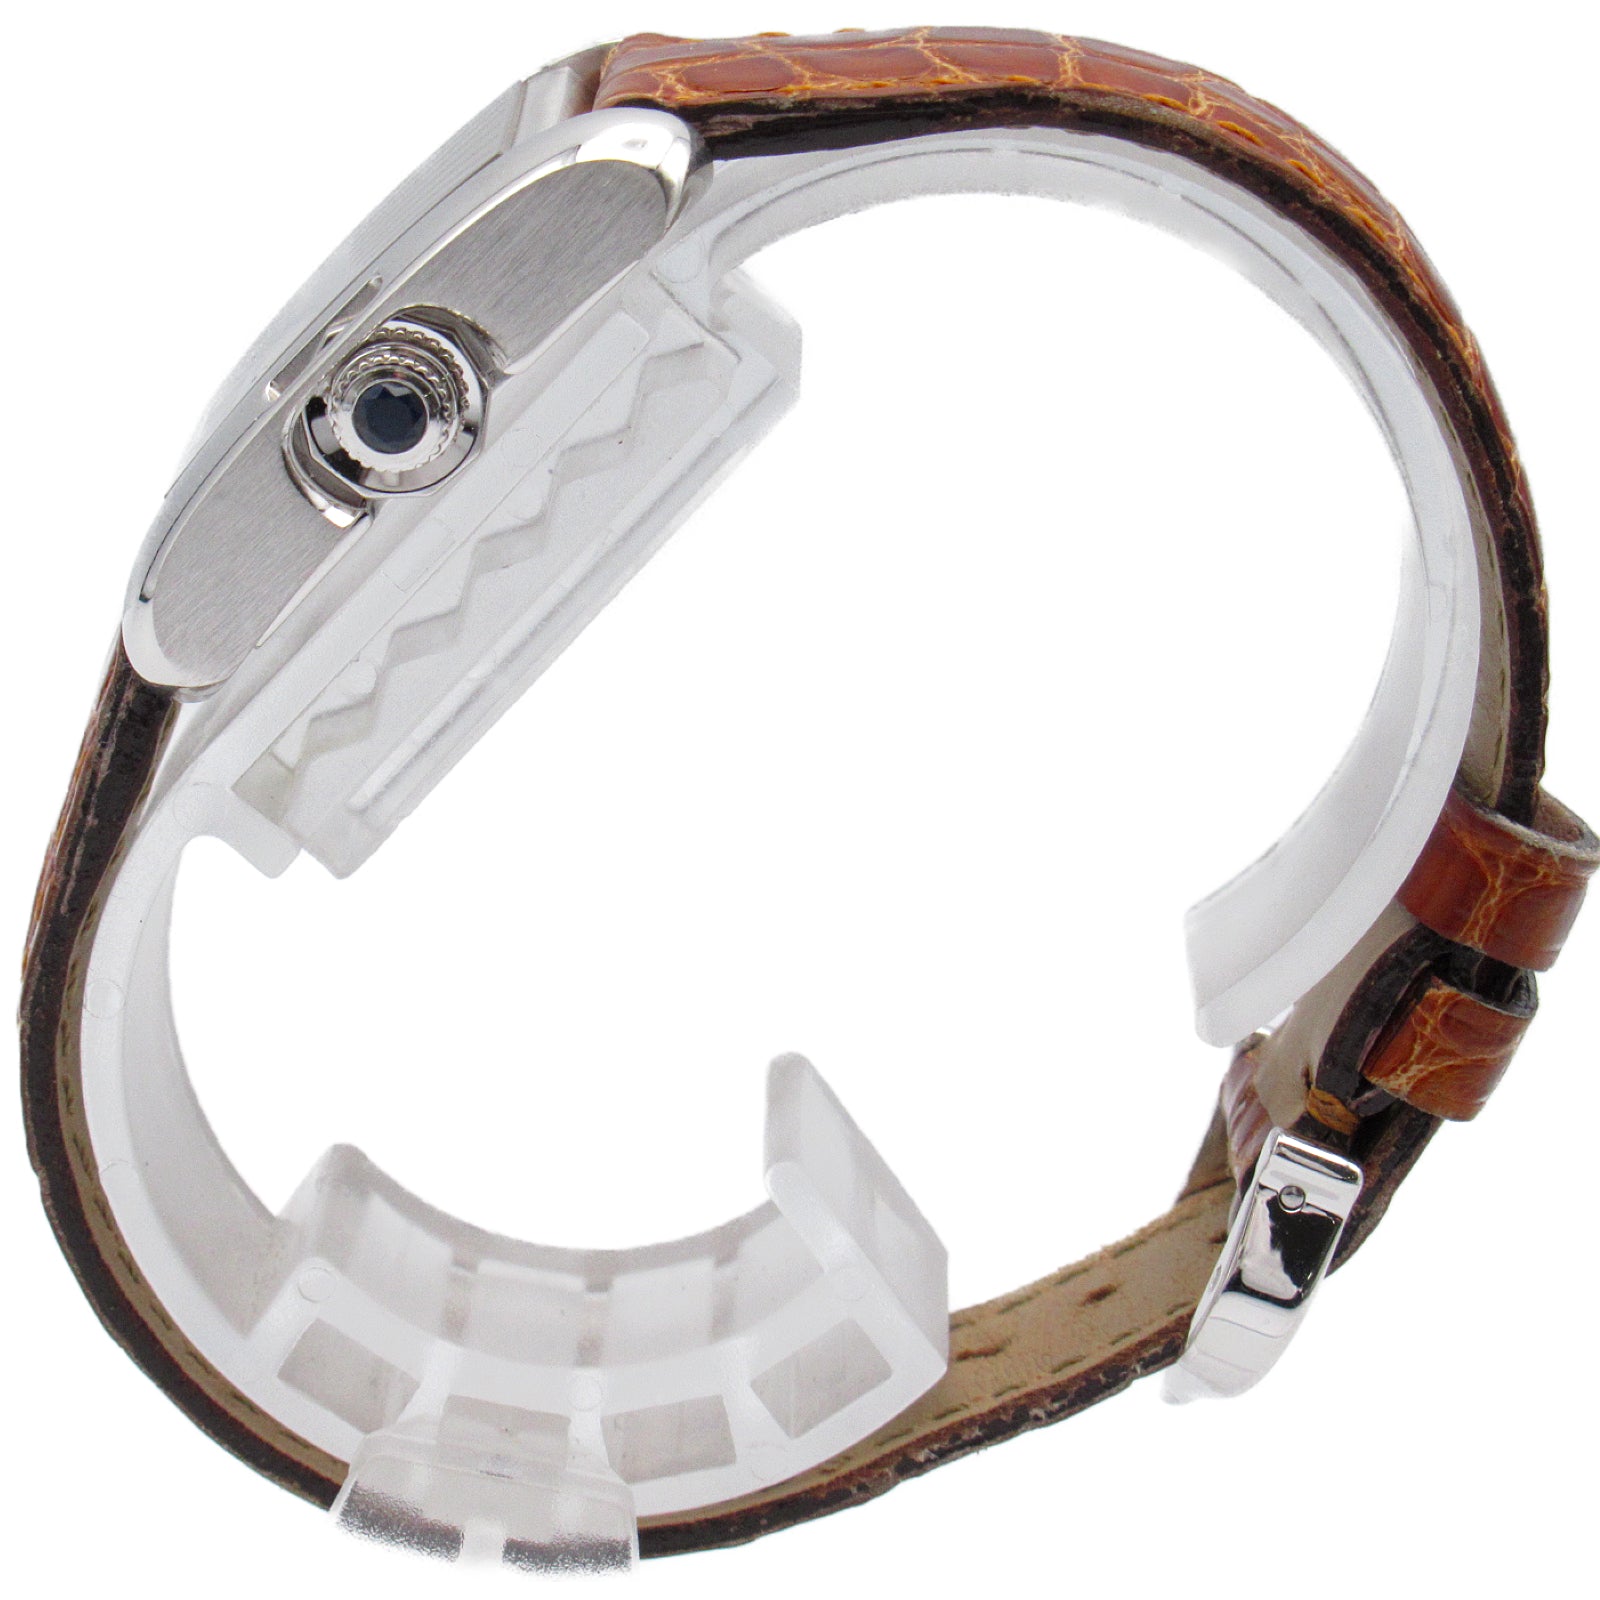 Cartier Cartier SM Watch K18WG (White G) Leather Belt  Silver  W5310029